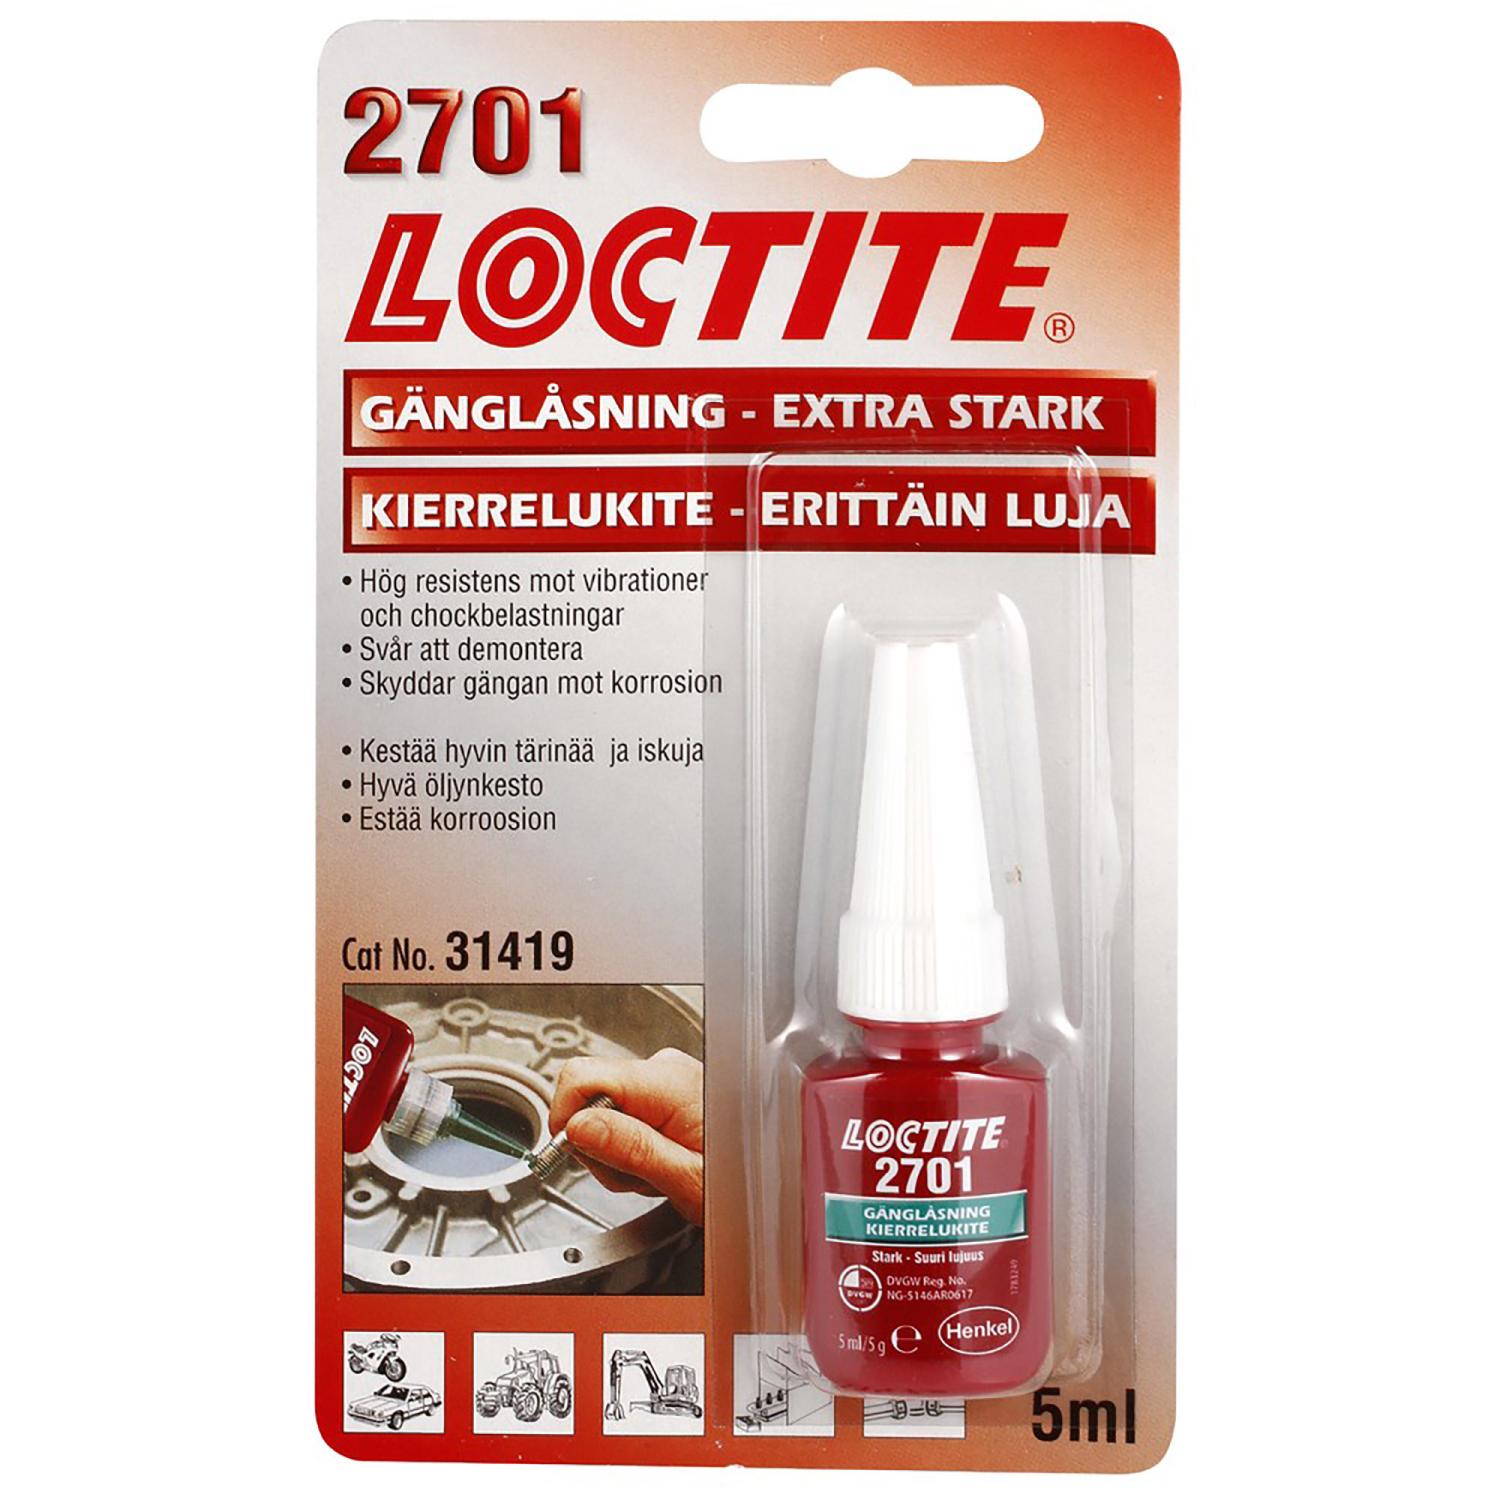 Loctite 2701 Gänglåsning 5ml EXTRA STARK